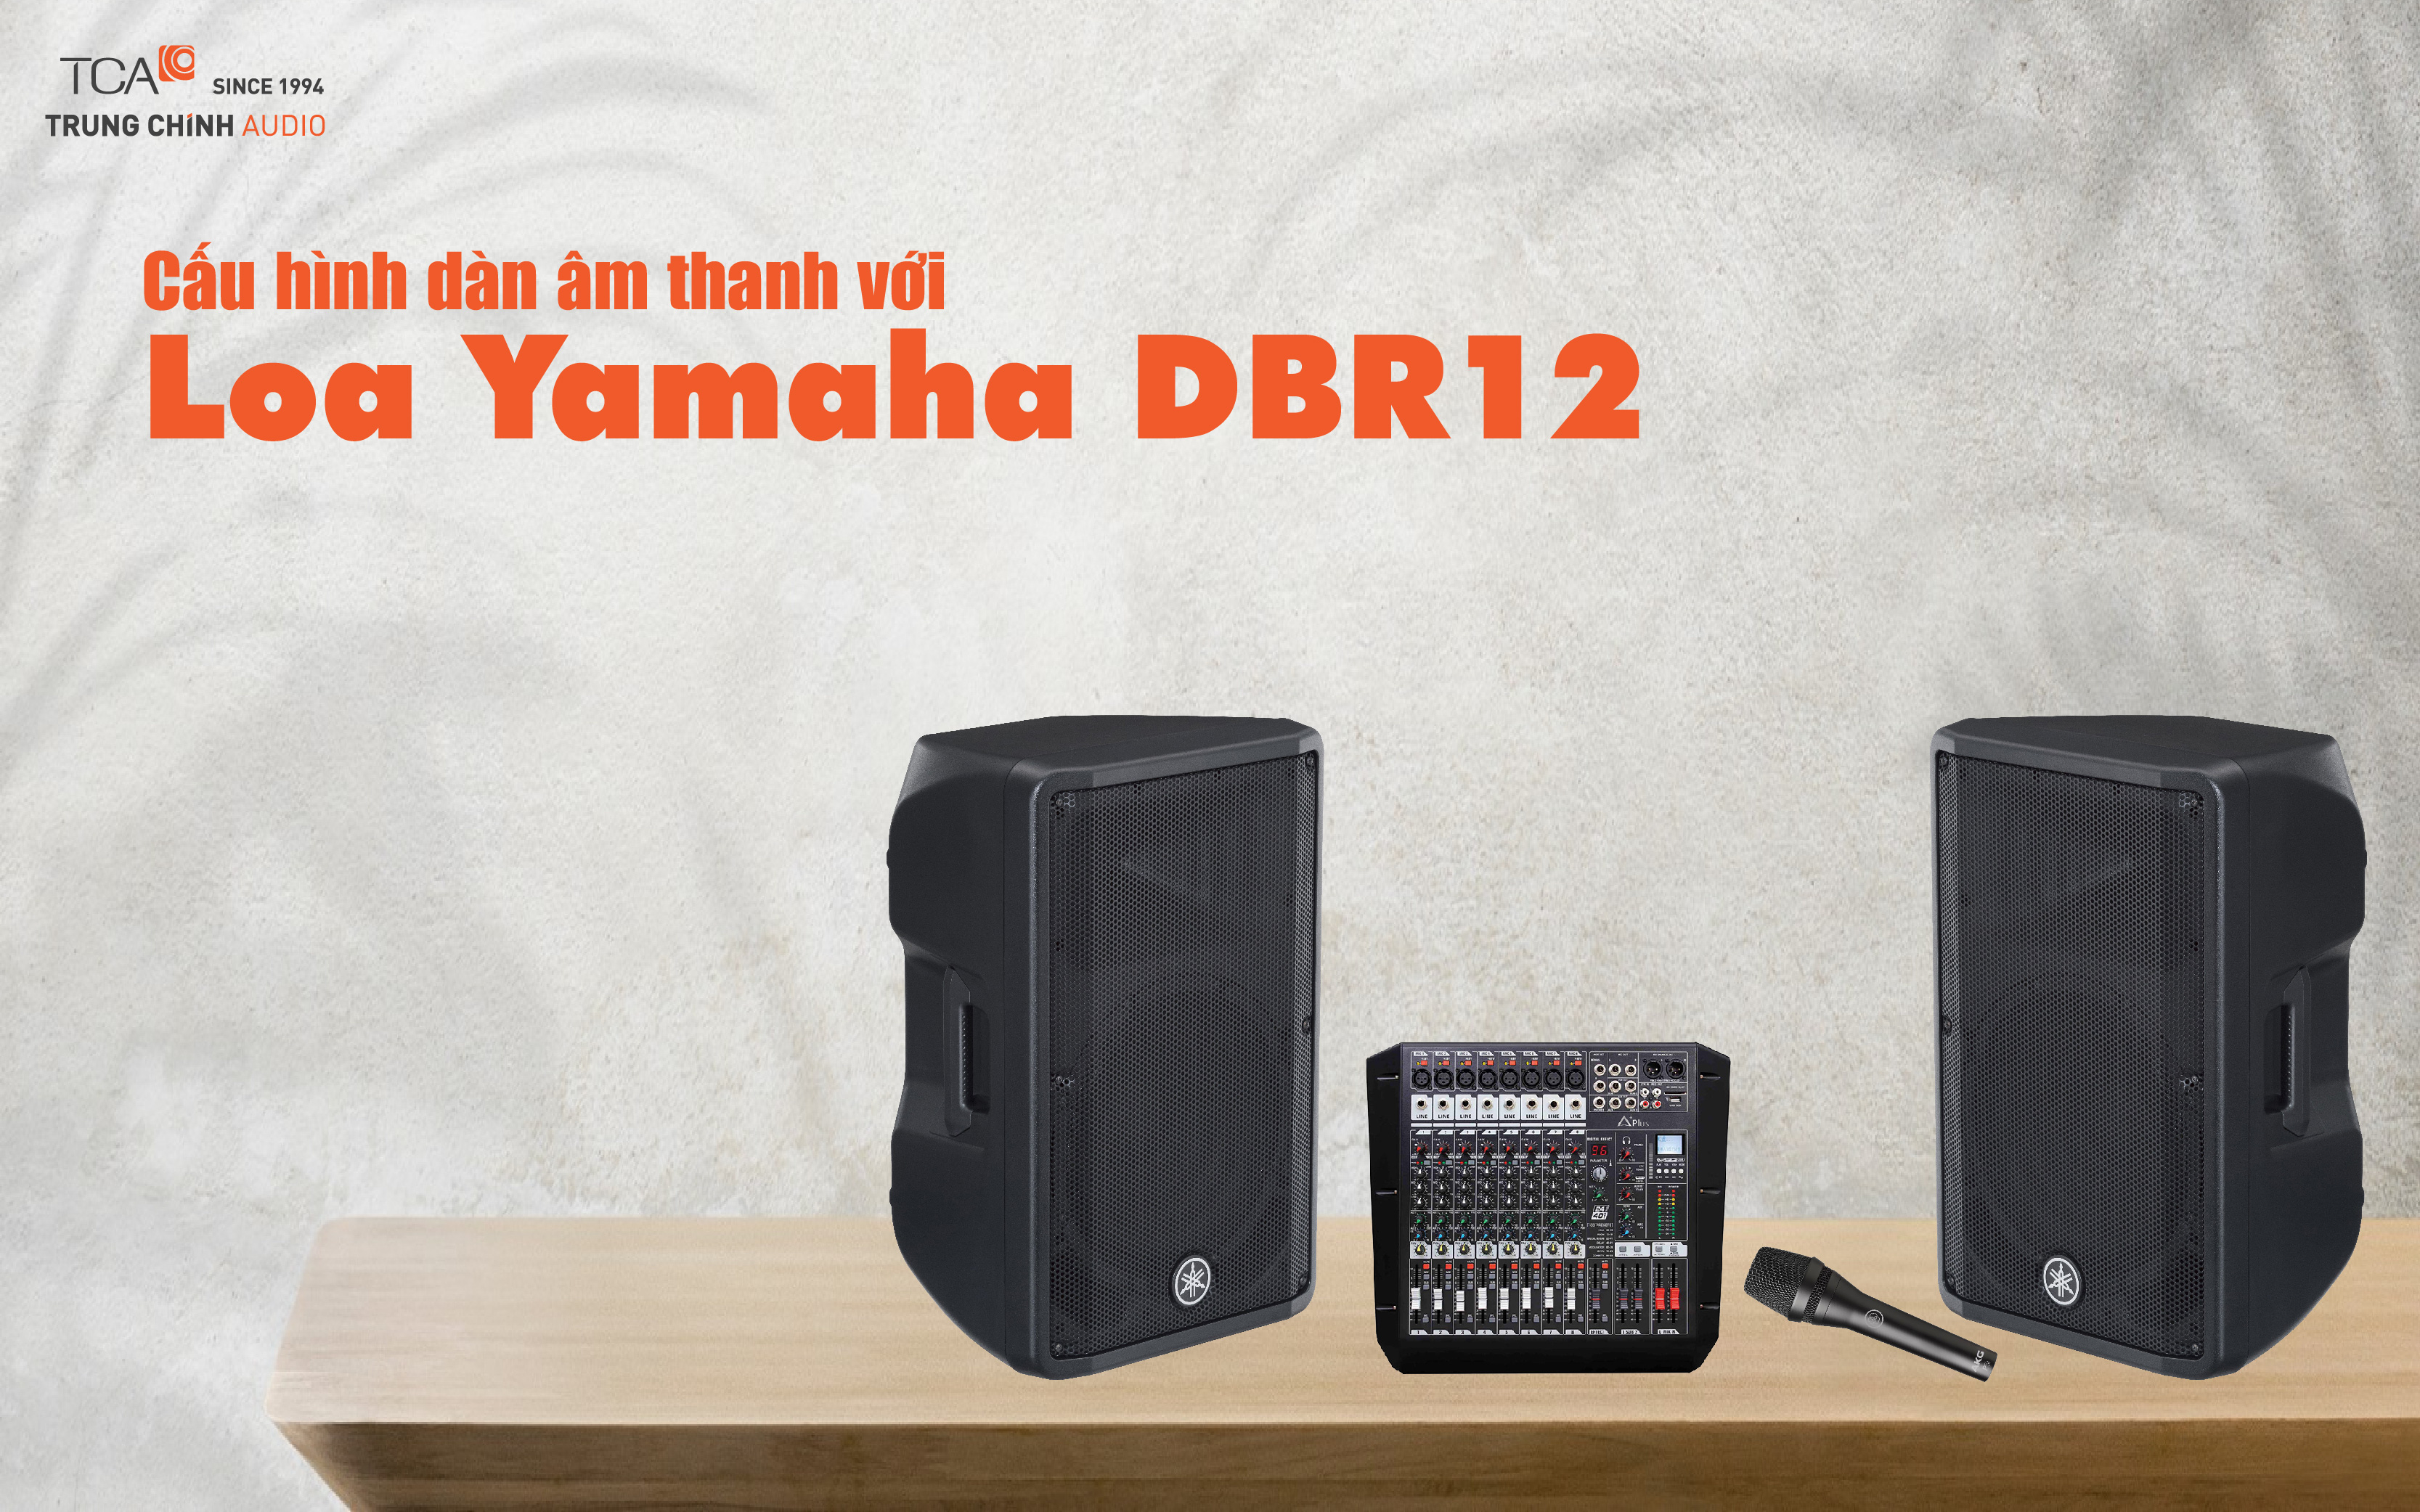 Cấu hình dàn âm thanh với loa Yamaha DBR12